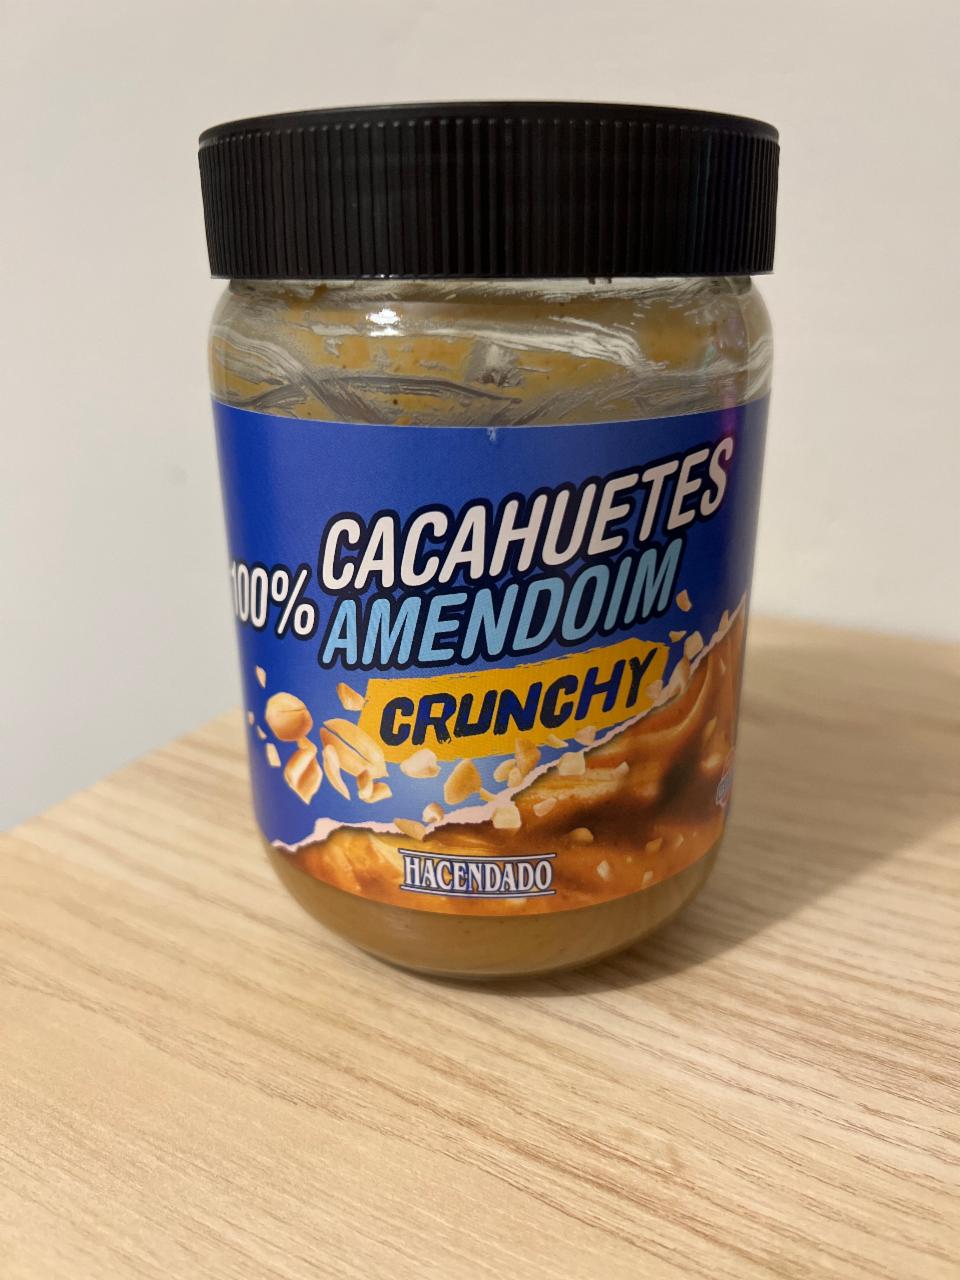 Фото - арахисовая паста хрустящая 100% cacahuetes crunchy Hacendado